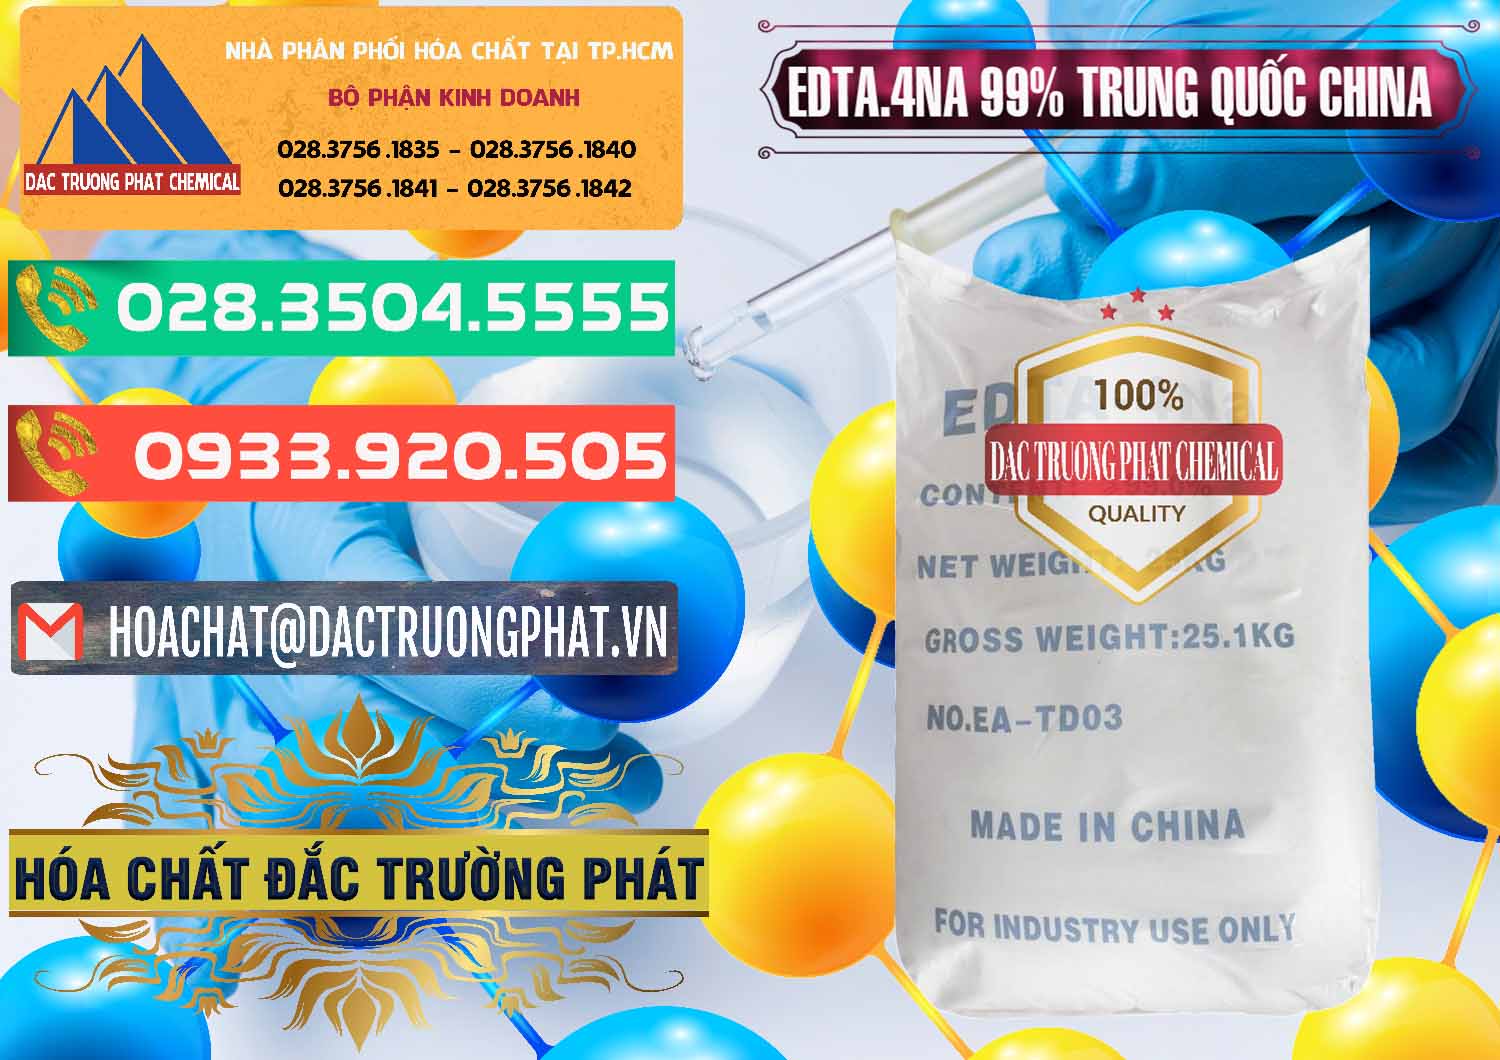 Công ty chuyên kinh doanh _ bán EDTA.4NA - EDTA Muối 99% Trung Quốc China - 0292 - Đơn vị bán ( phân phối ) hóa chất tại TP.HCM - congtyhoachat.com.vn